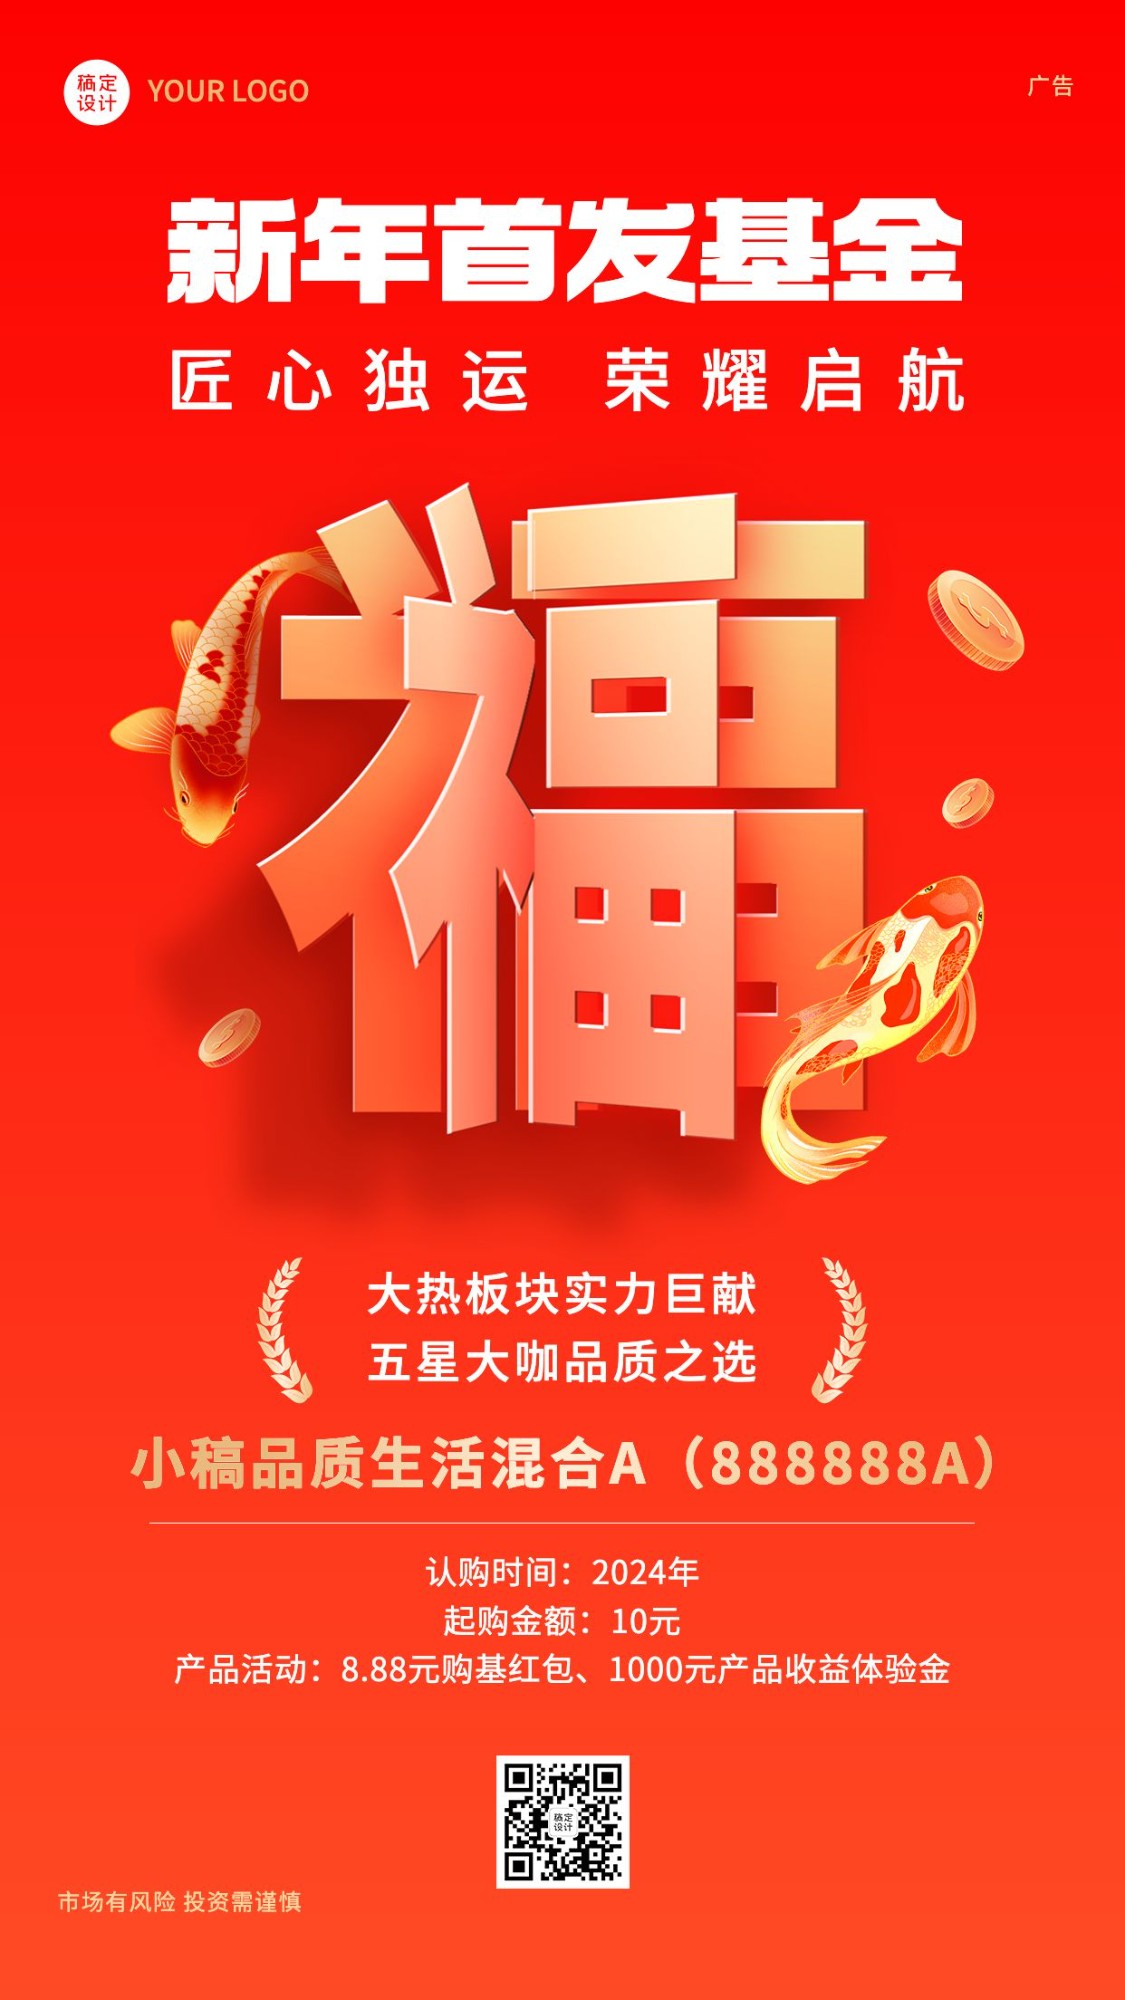 春节新年金融保险基金理财产品上市营销创意手机海报